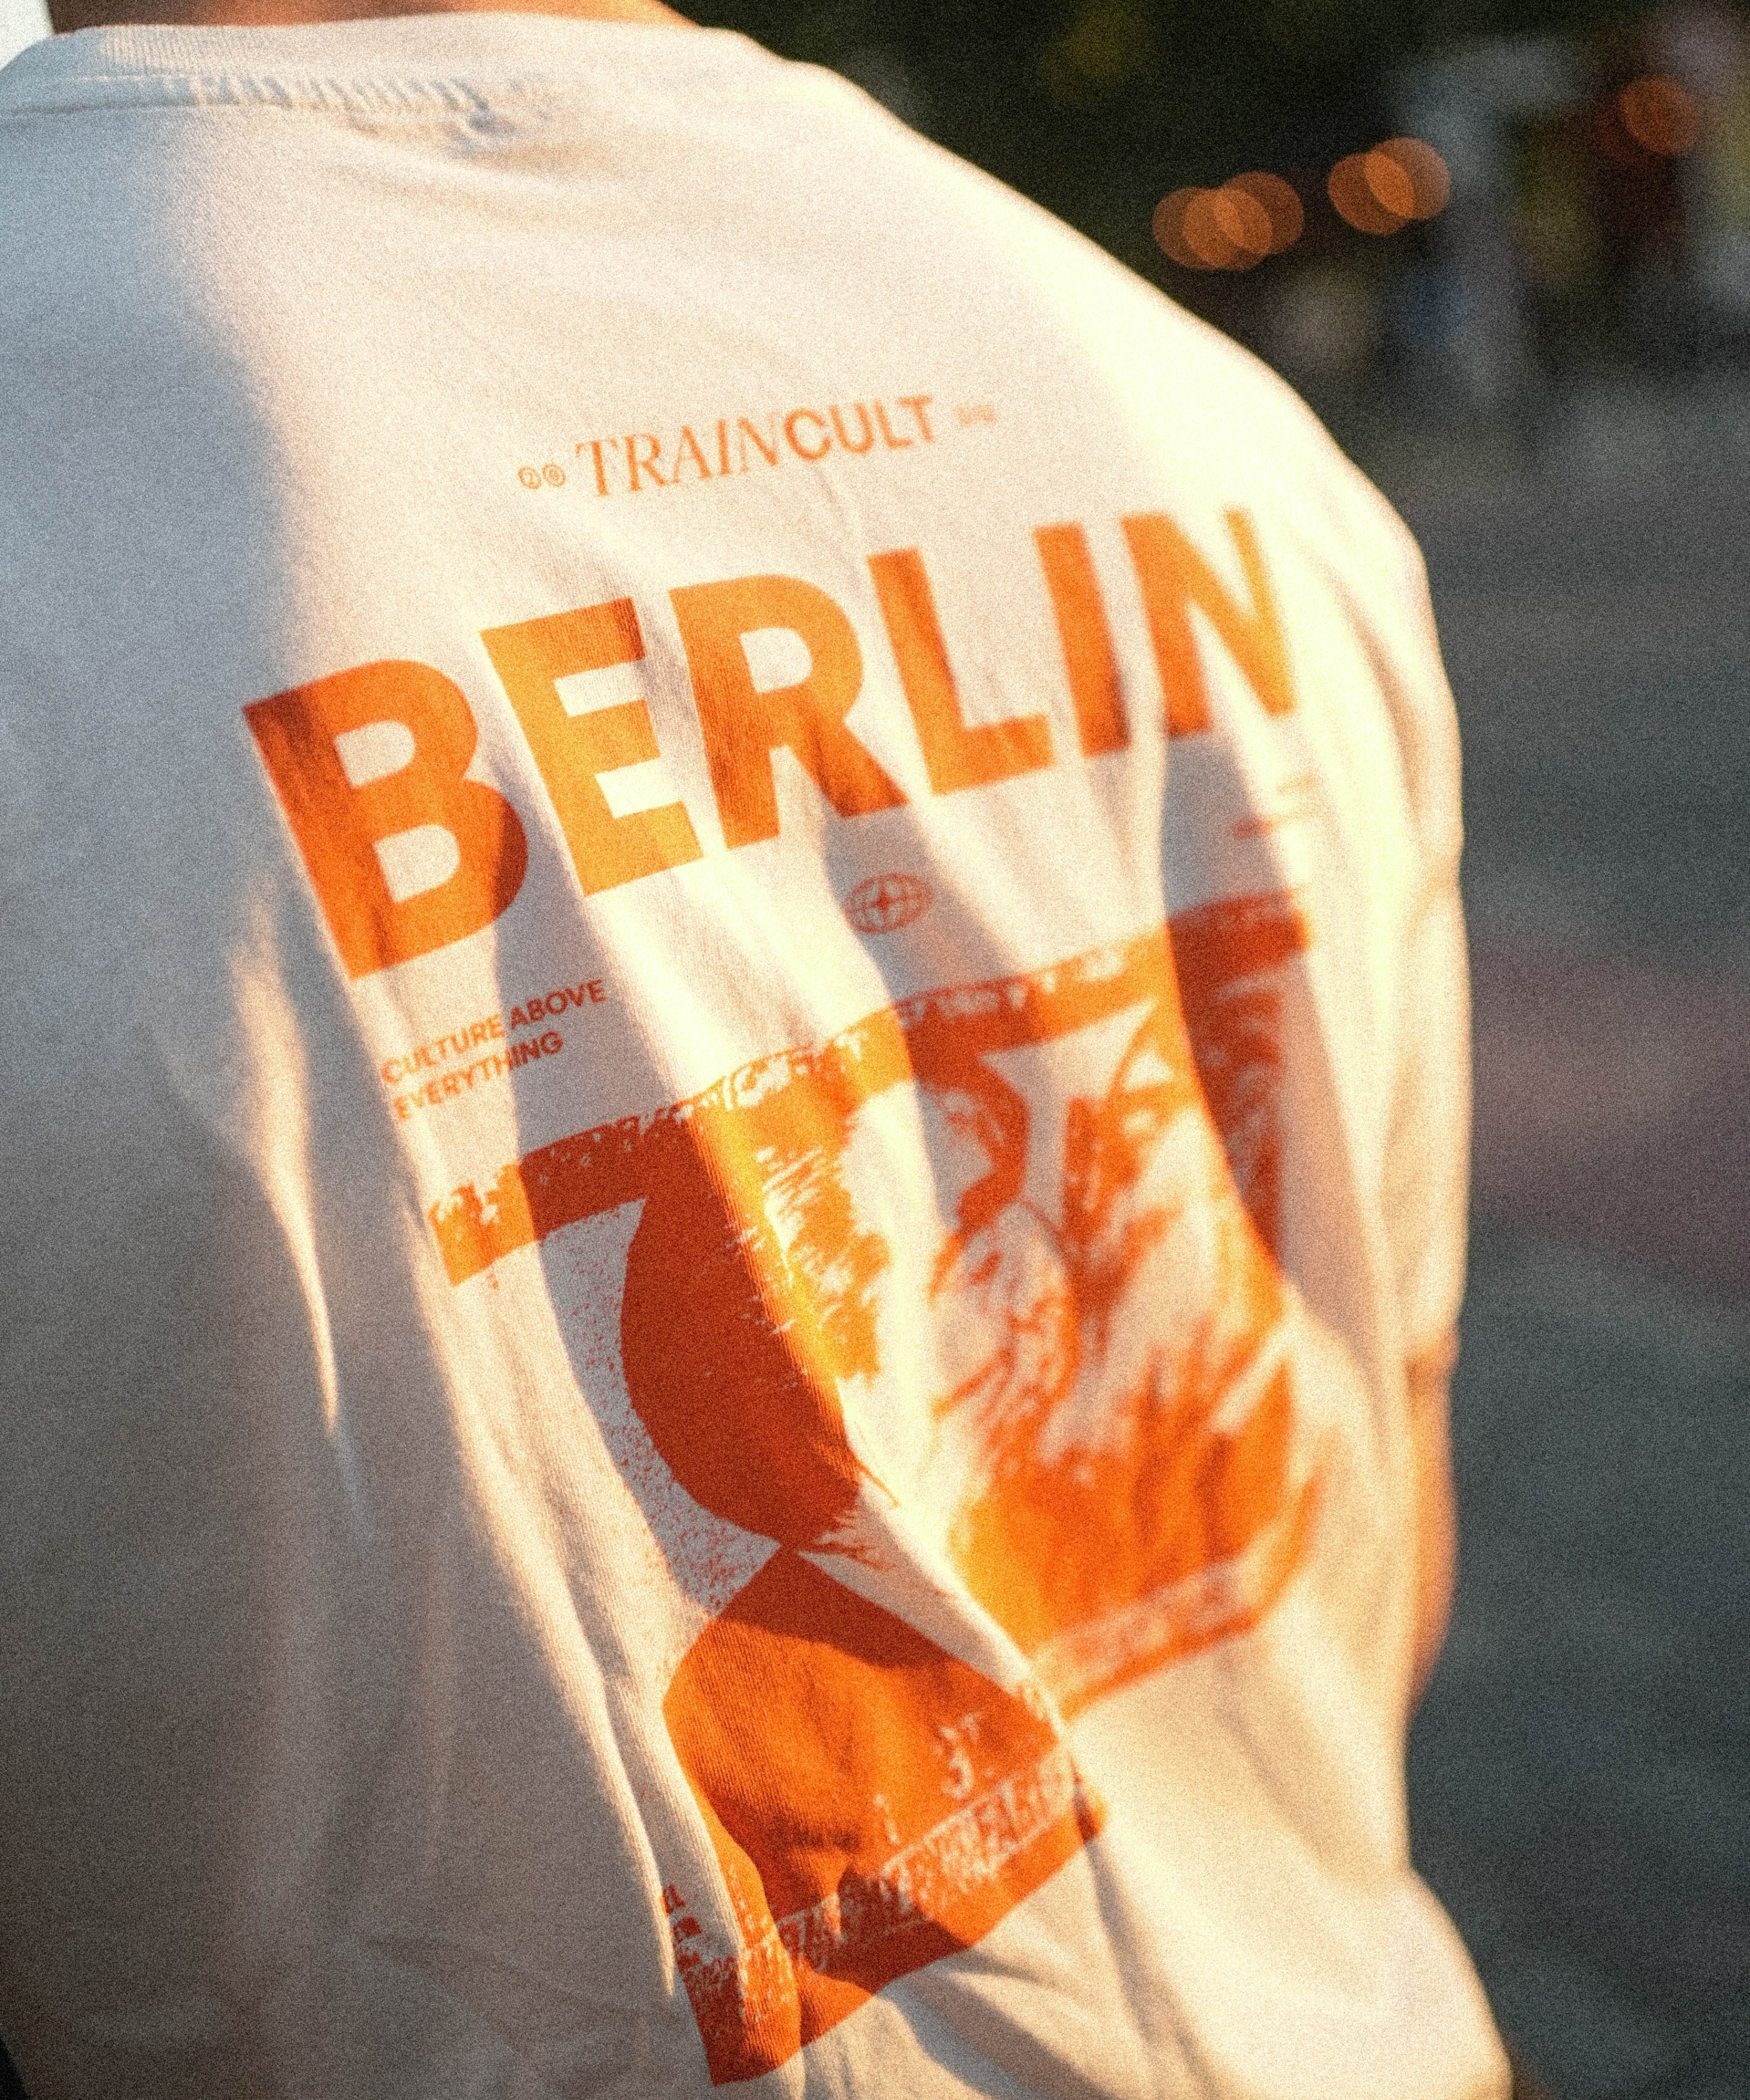 Semifinals Berlin T-Shirt